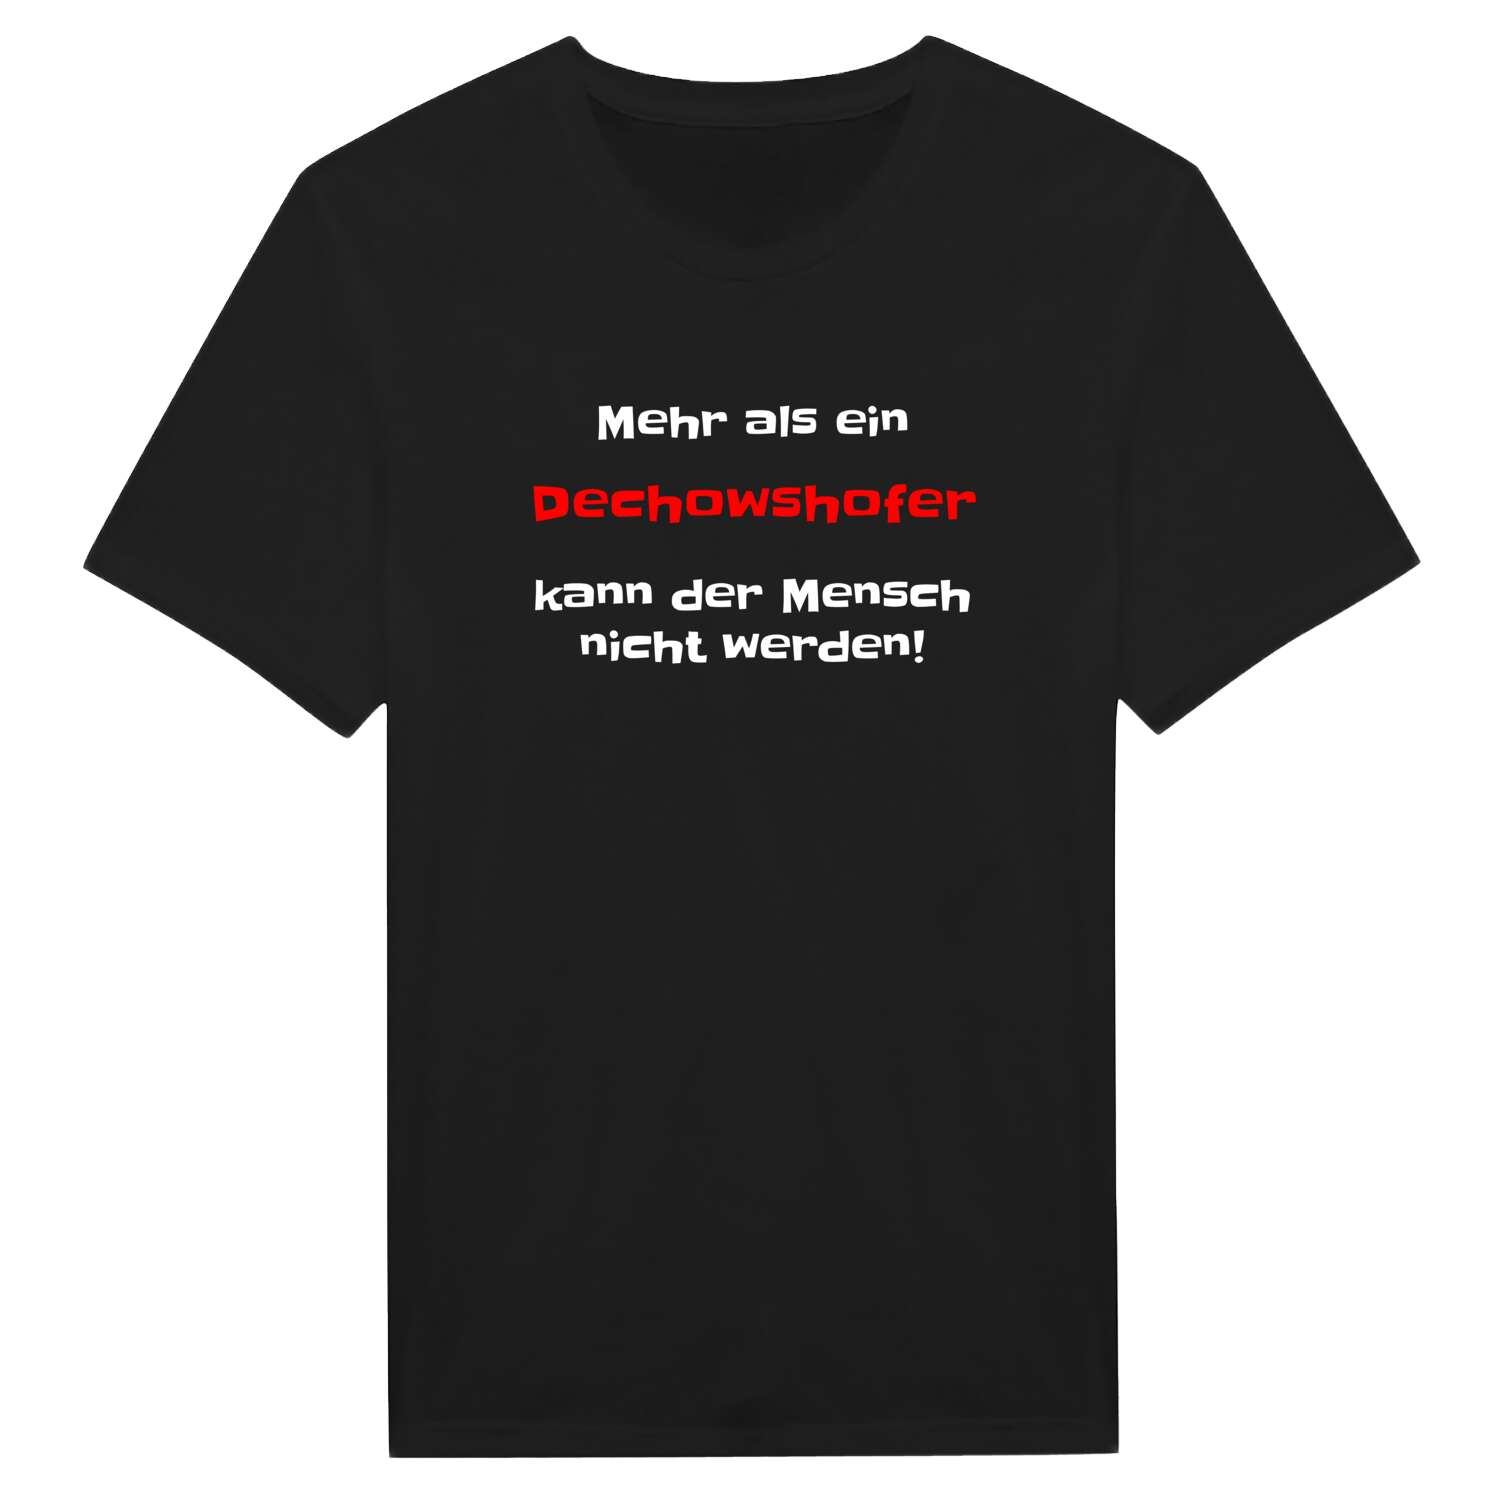 Dechowshof T-Shirt »Mehr als ein«